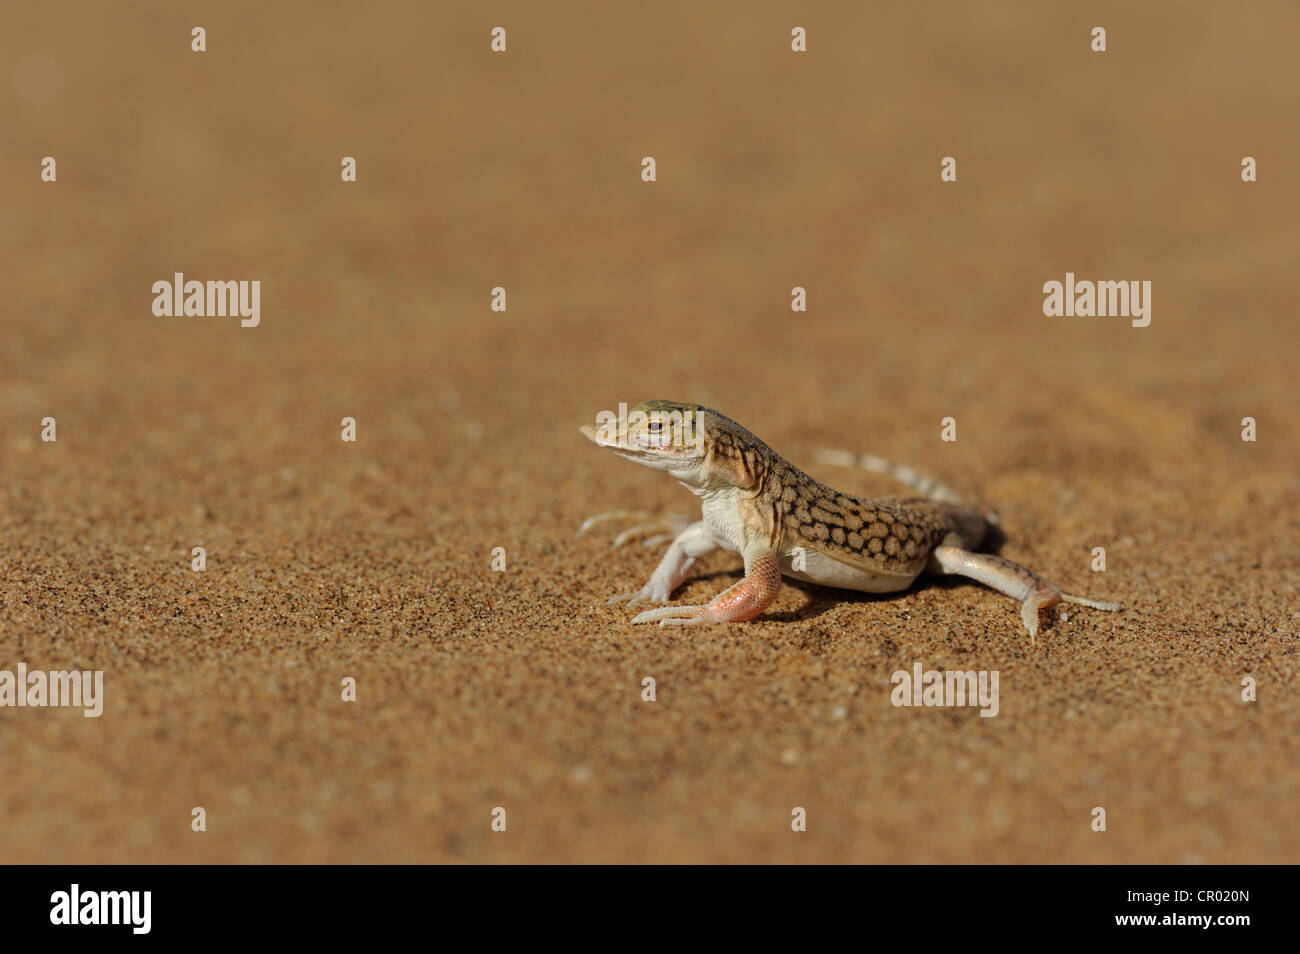 Schaufel snouted Lizard (Meroles Anchietae), Namib-Wüste, namibia Stockfoto